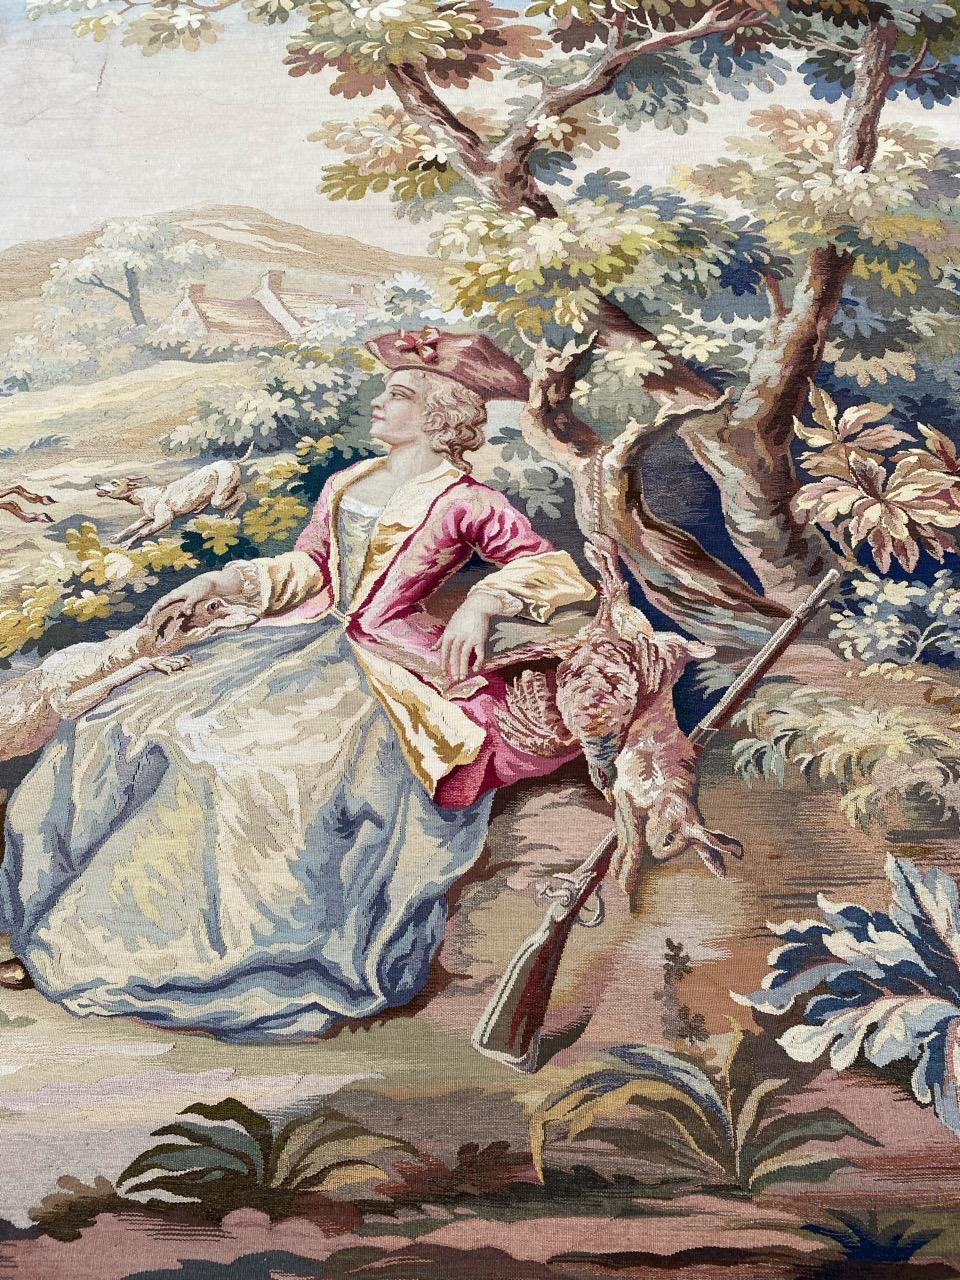 Très belle tapisserie d'Aubusson de la fin du 19ème siècle avec un beau décor galant, de chasse et de belles couleurs, extrêmement finement tissée à la main avec de la soie et de la laine.

✨✨✨
